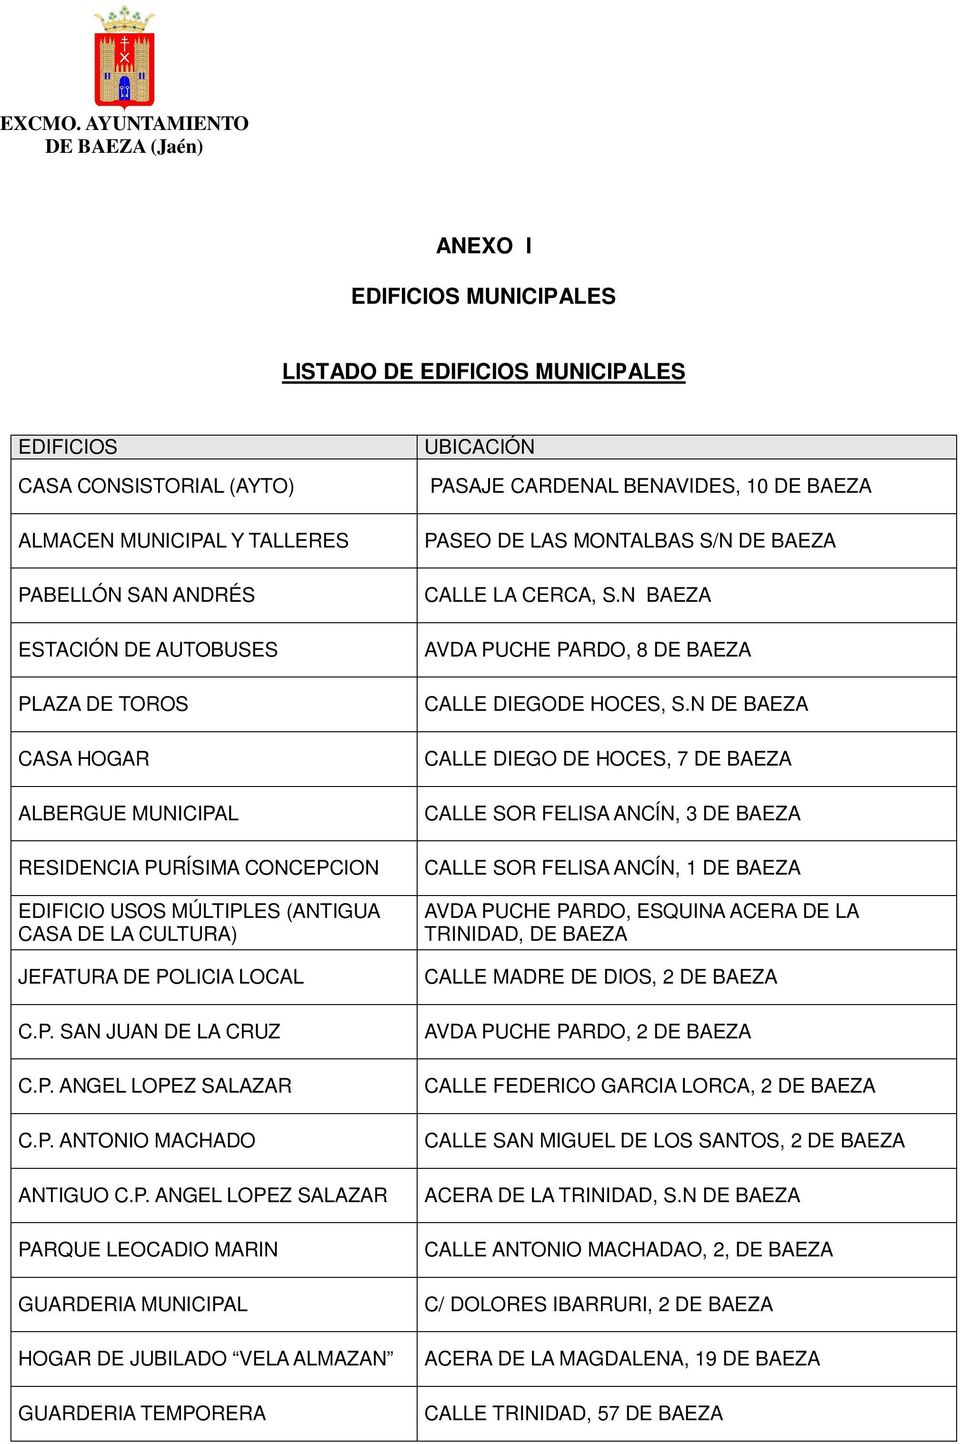 P. ANGEL LOPEZ SALAZAR PARQUE LEOCADIO MARIN GUARDERIA MUNICIPAL HOGAR DE JUBILADO VELA ALMAZAN GUARDERIA TEMPORERA UBICACIÓN PASAJE CARDENAL BENAVIDES, 10 DE BAEZA PASEO DE LAS MONTALBAS S/N DE